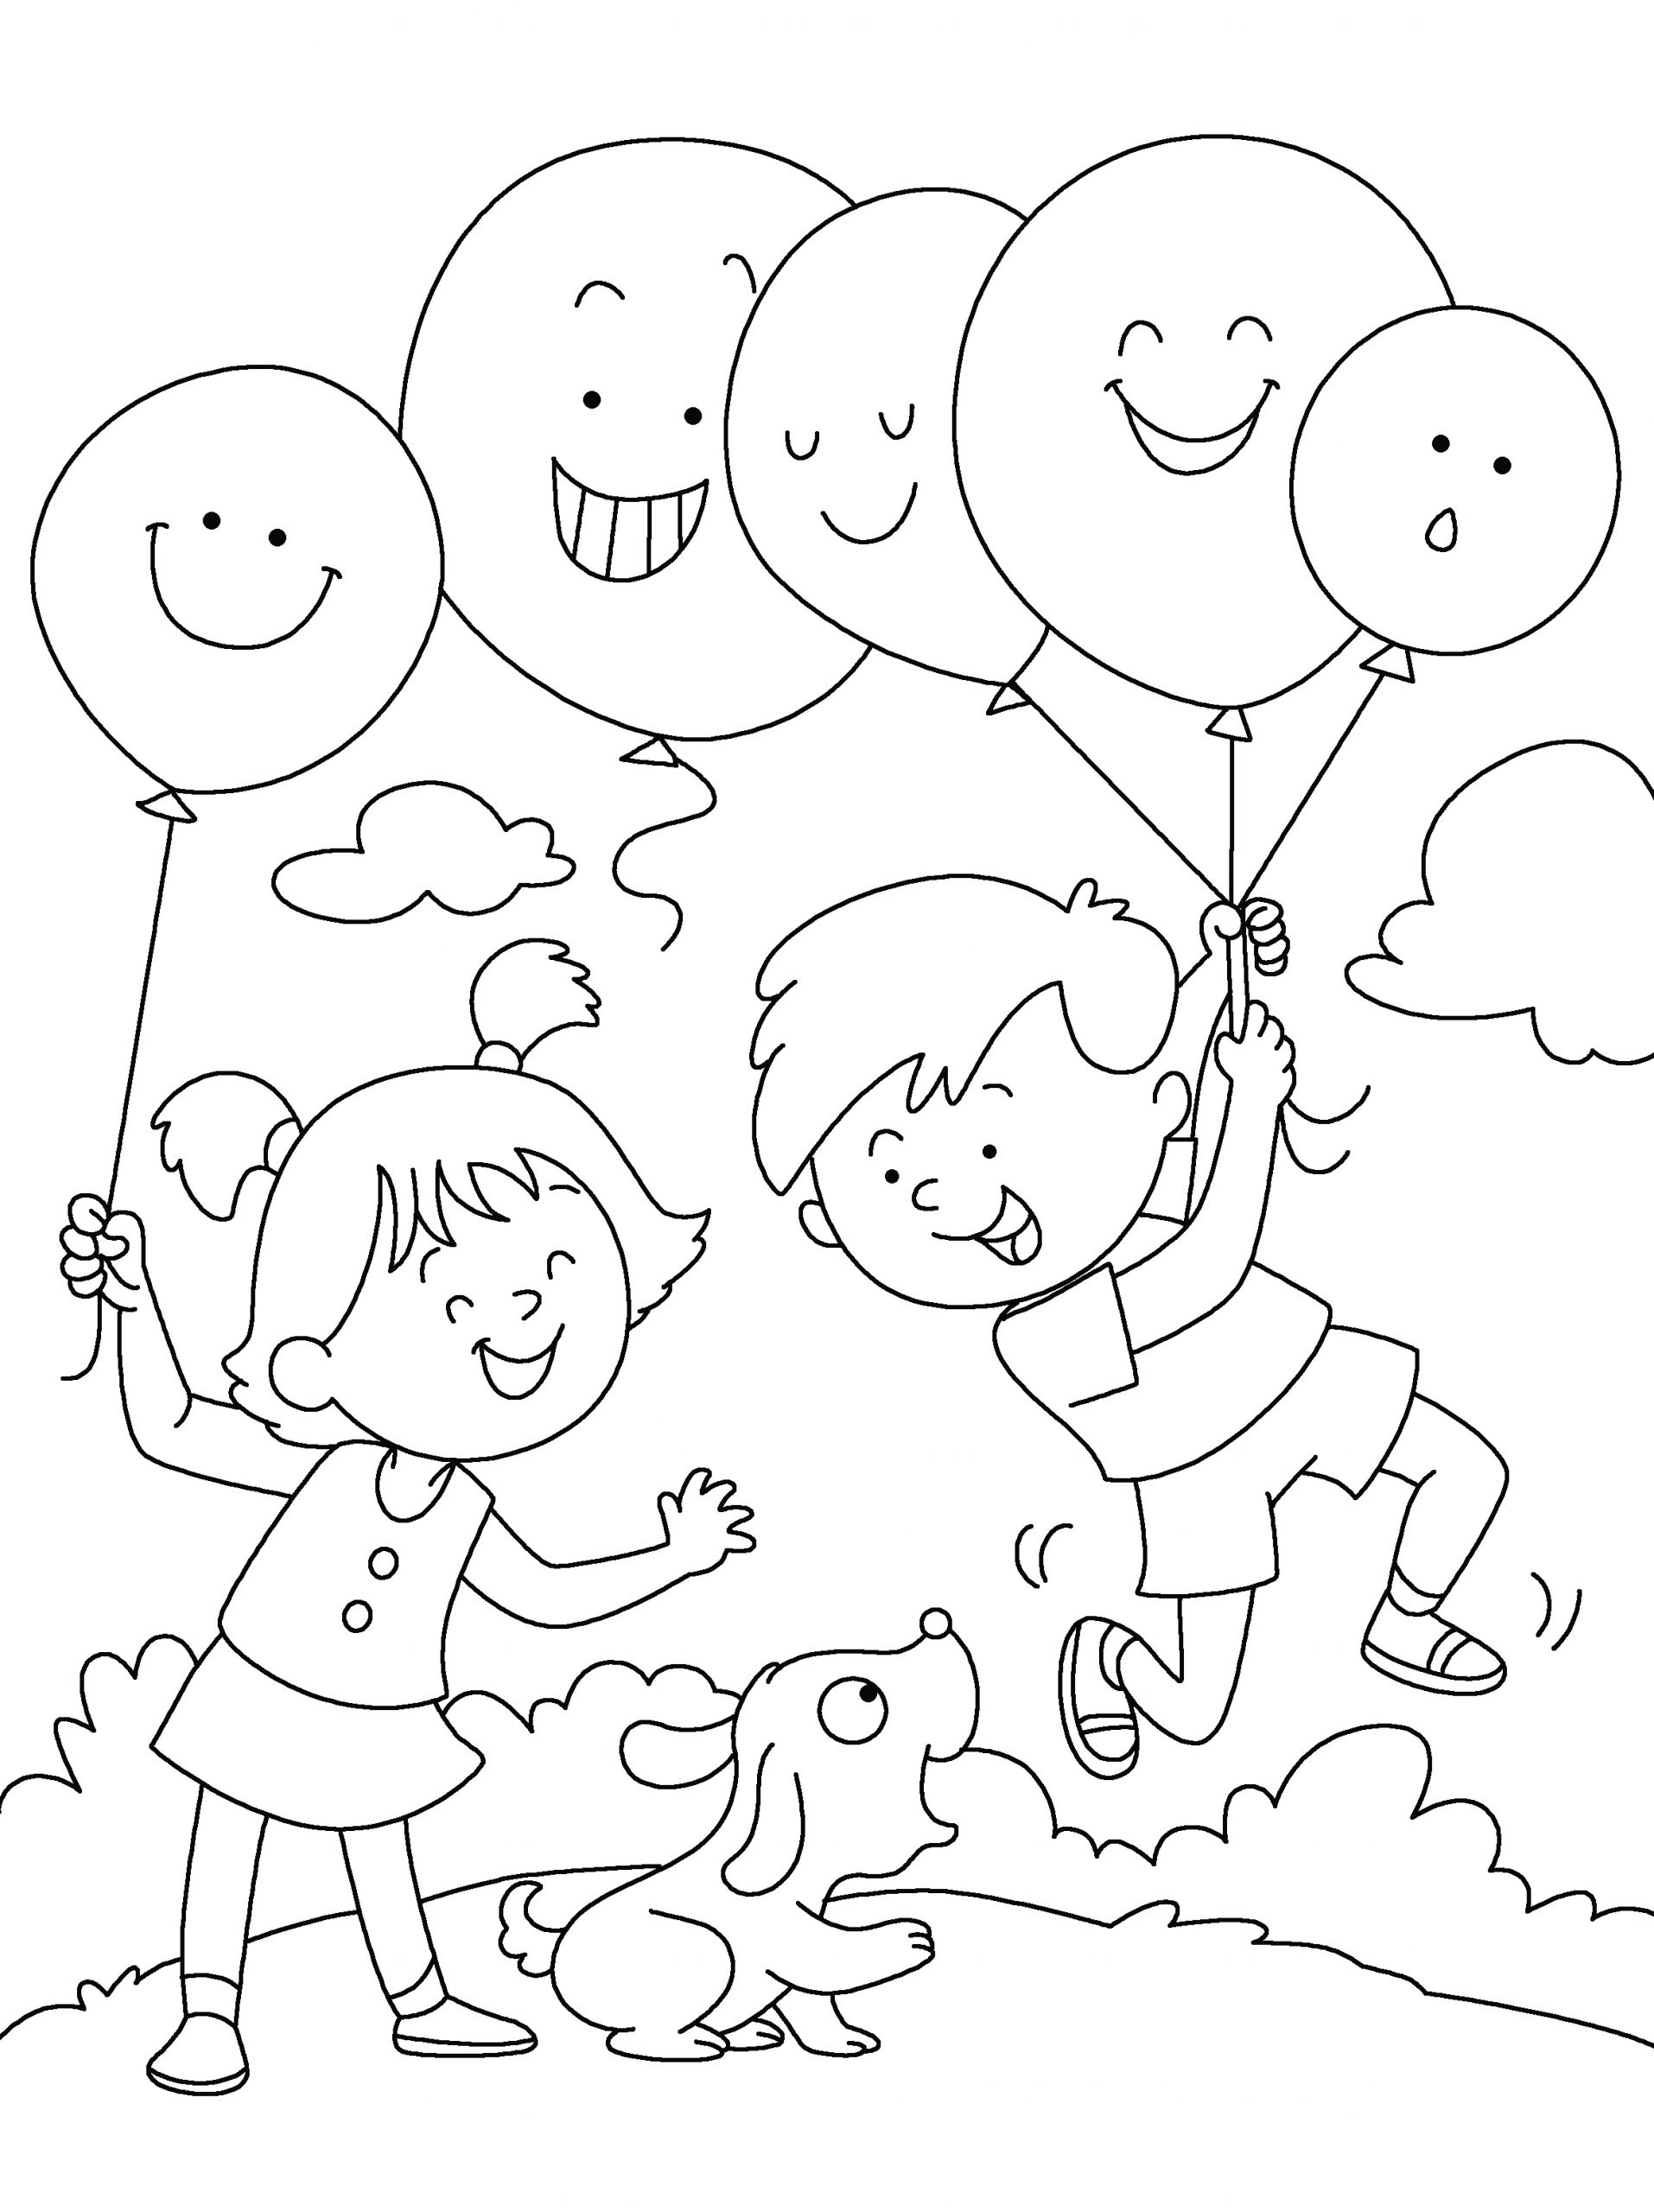 Balloon Time!